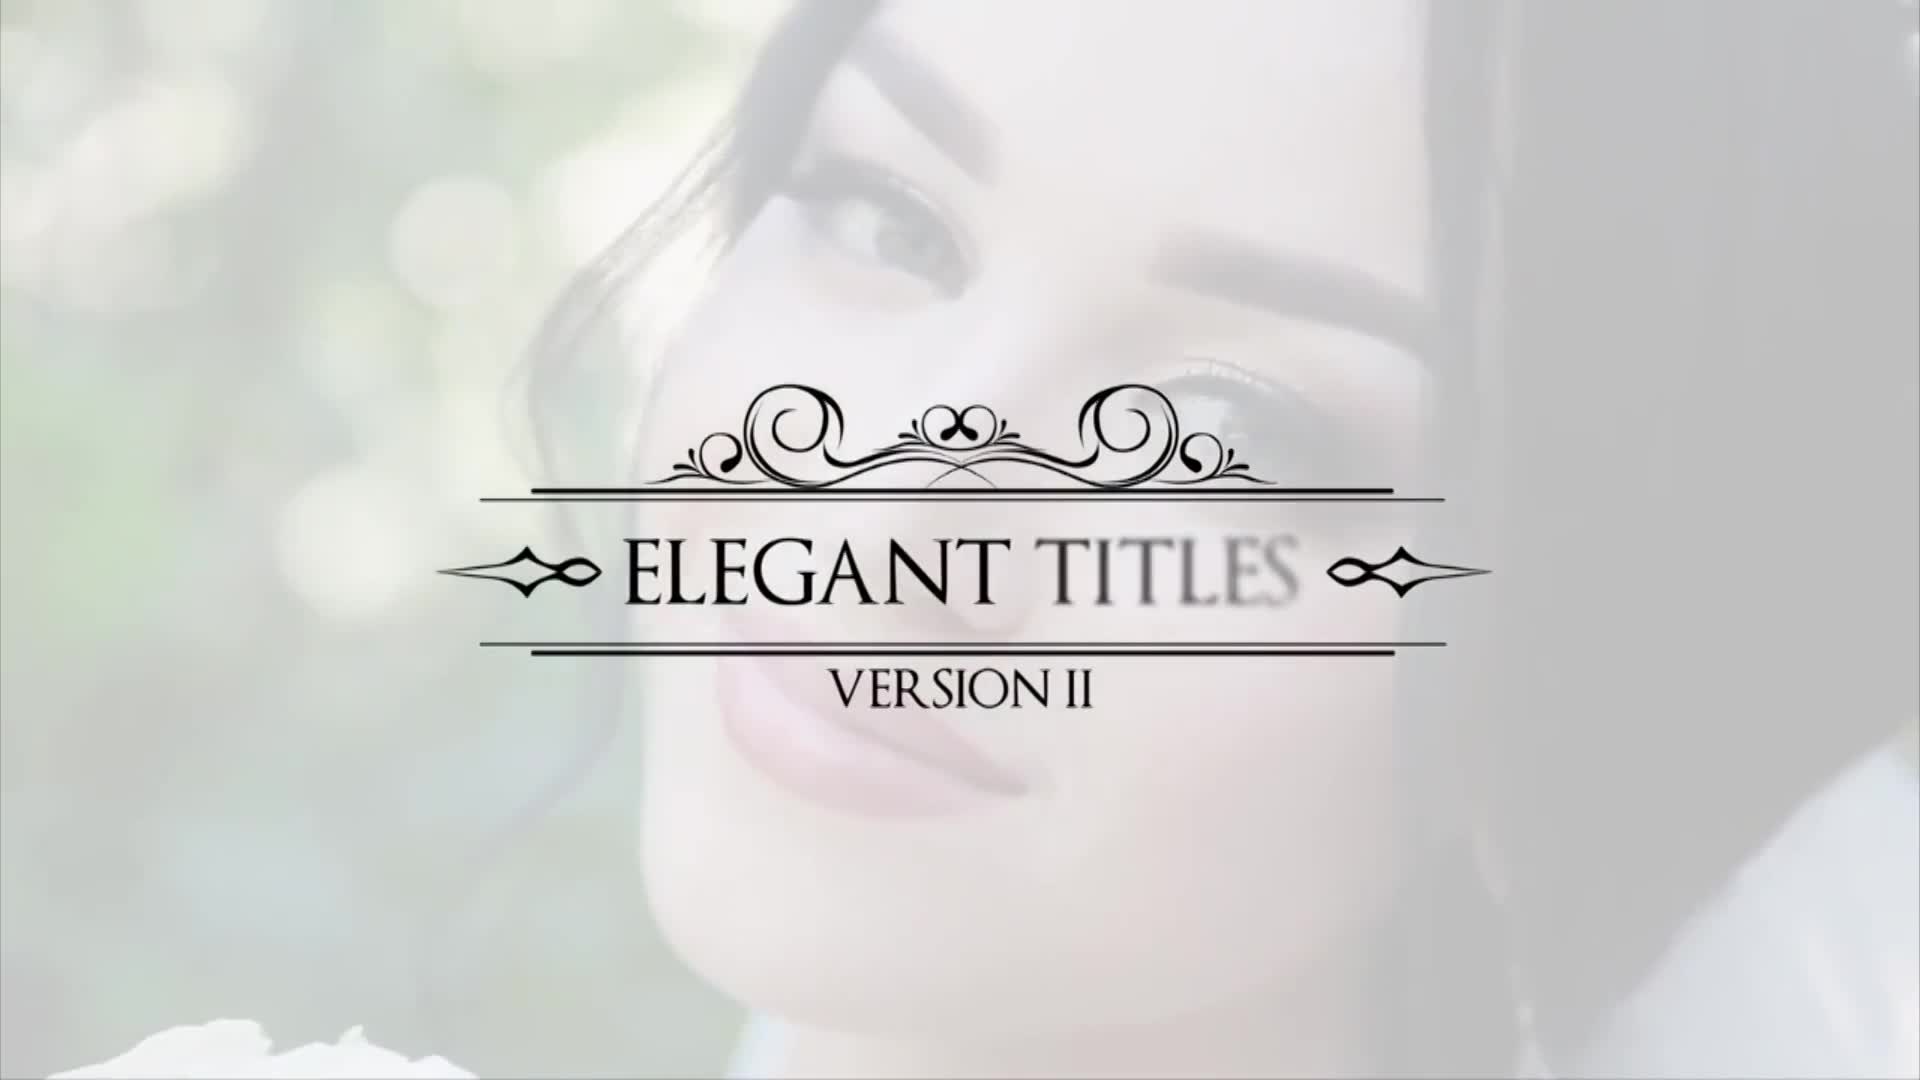 Elegant Titles V2 Videohive 31625584 After Effects Image 2